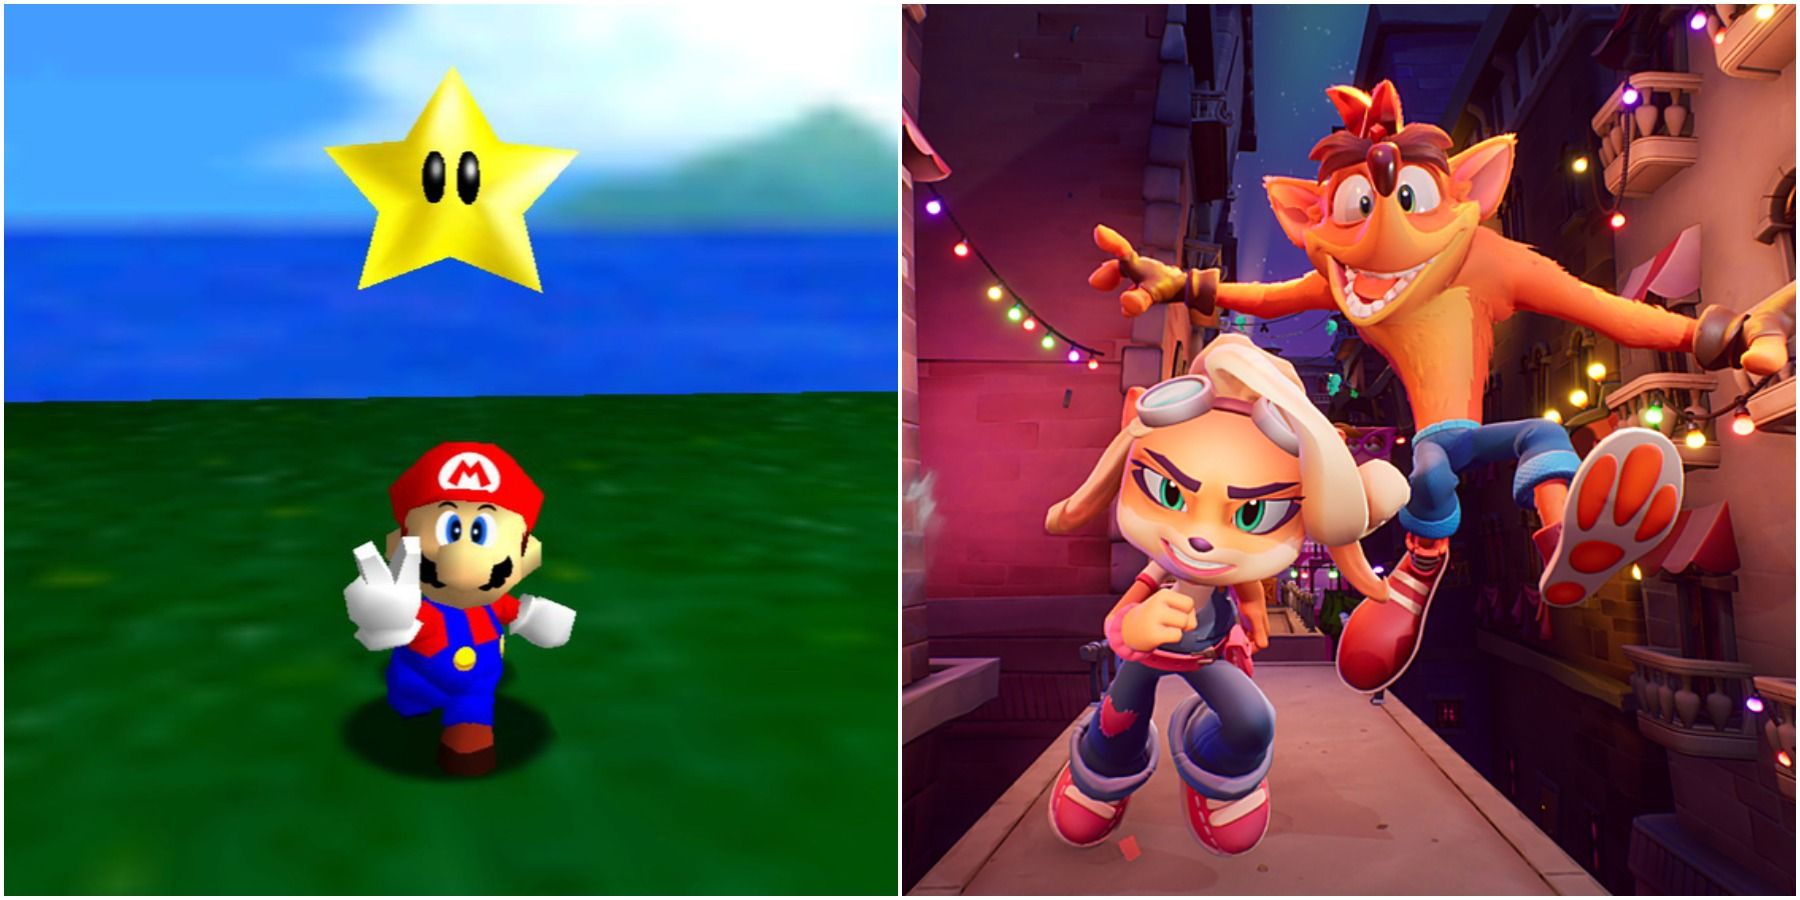 (Left) Mario (Right) Crash and Coco